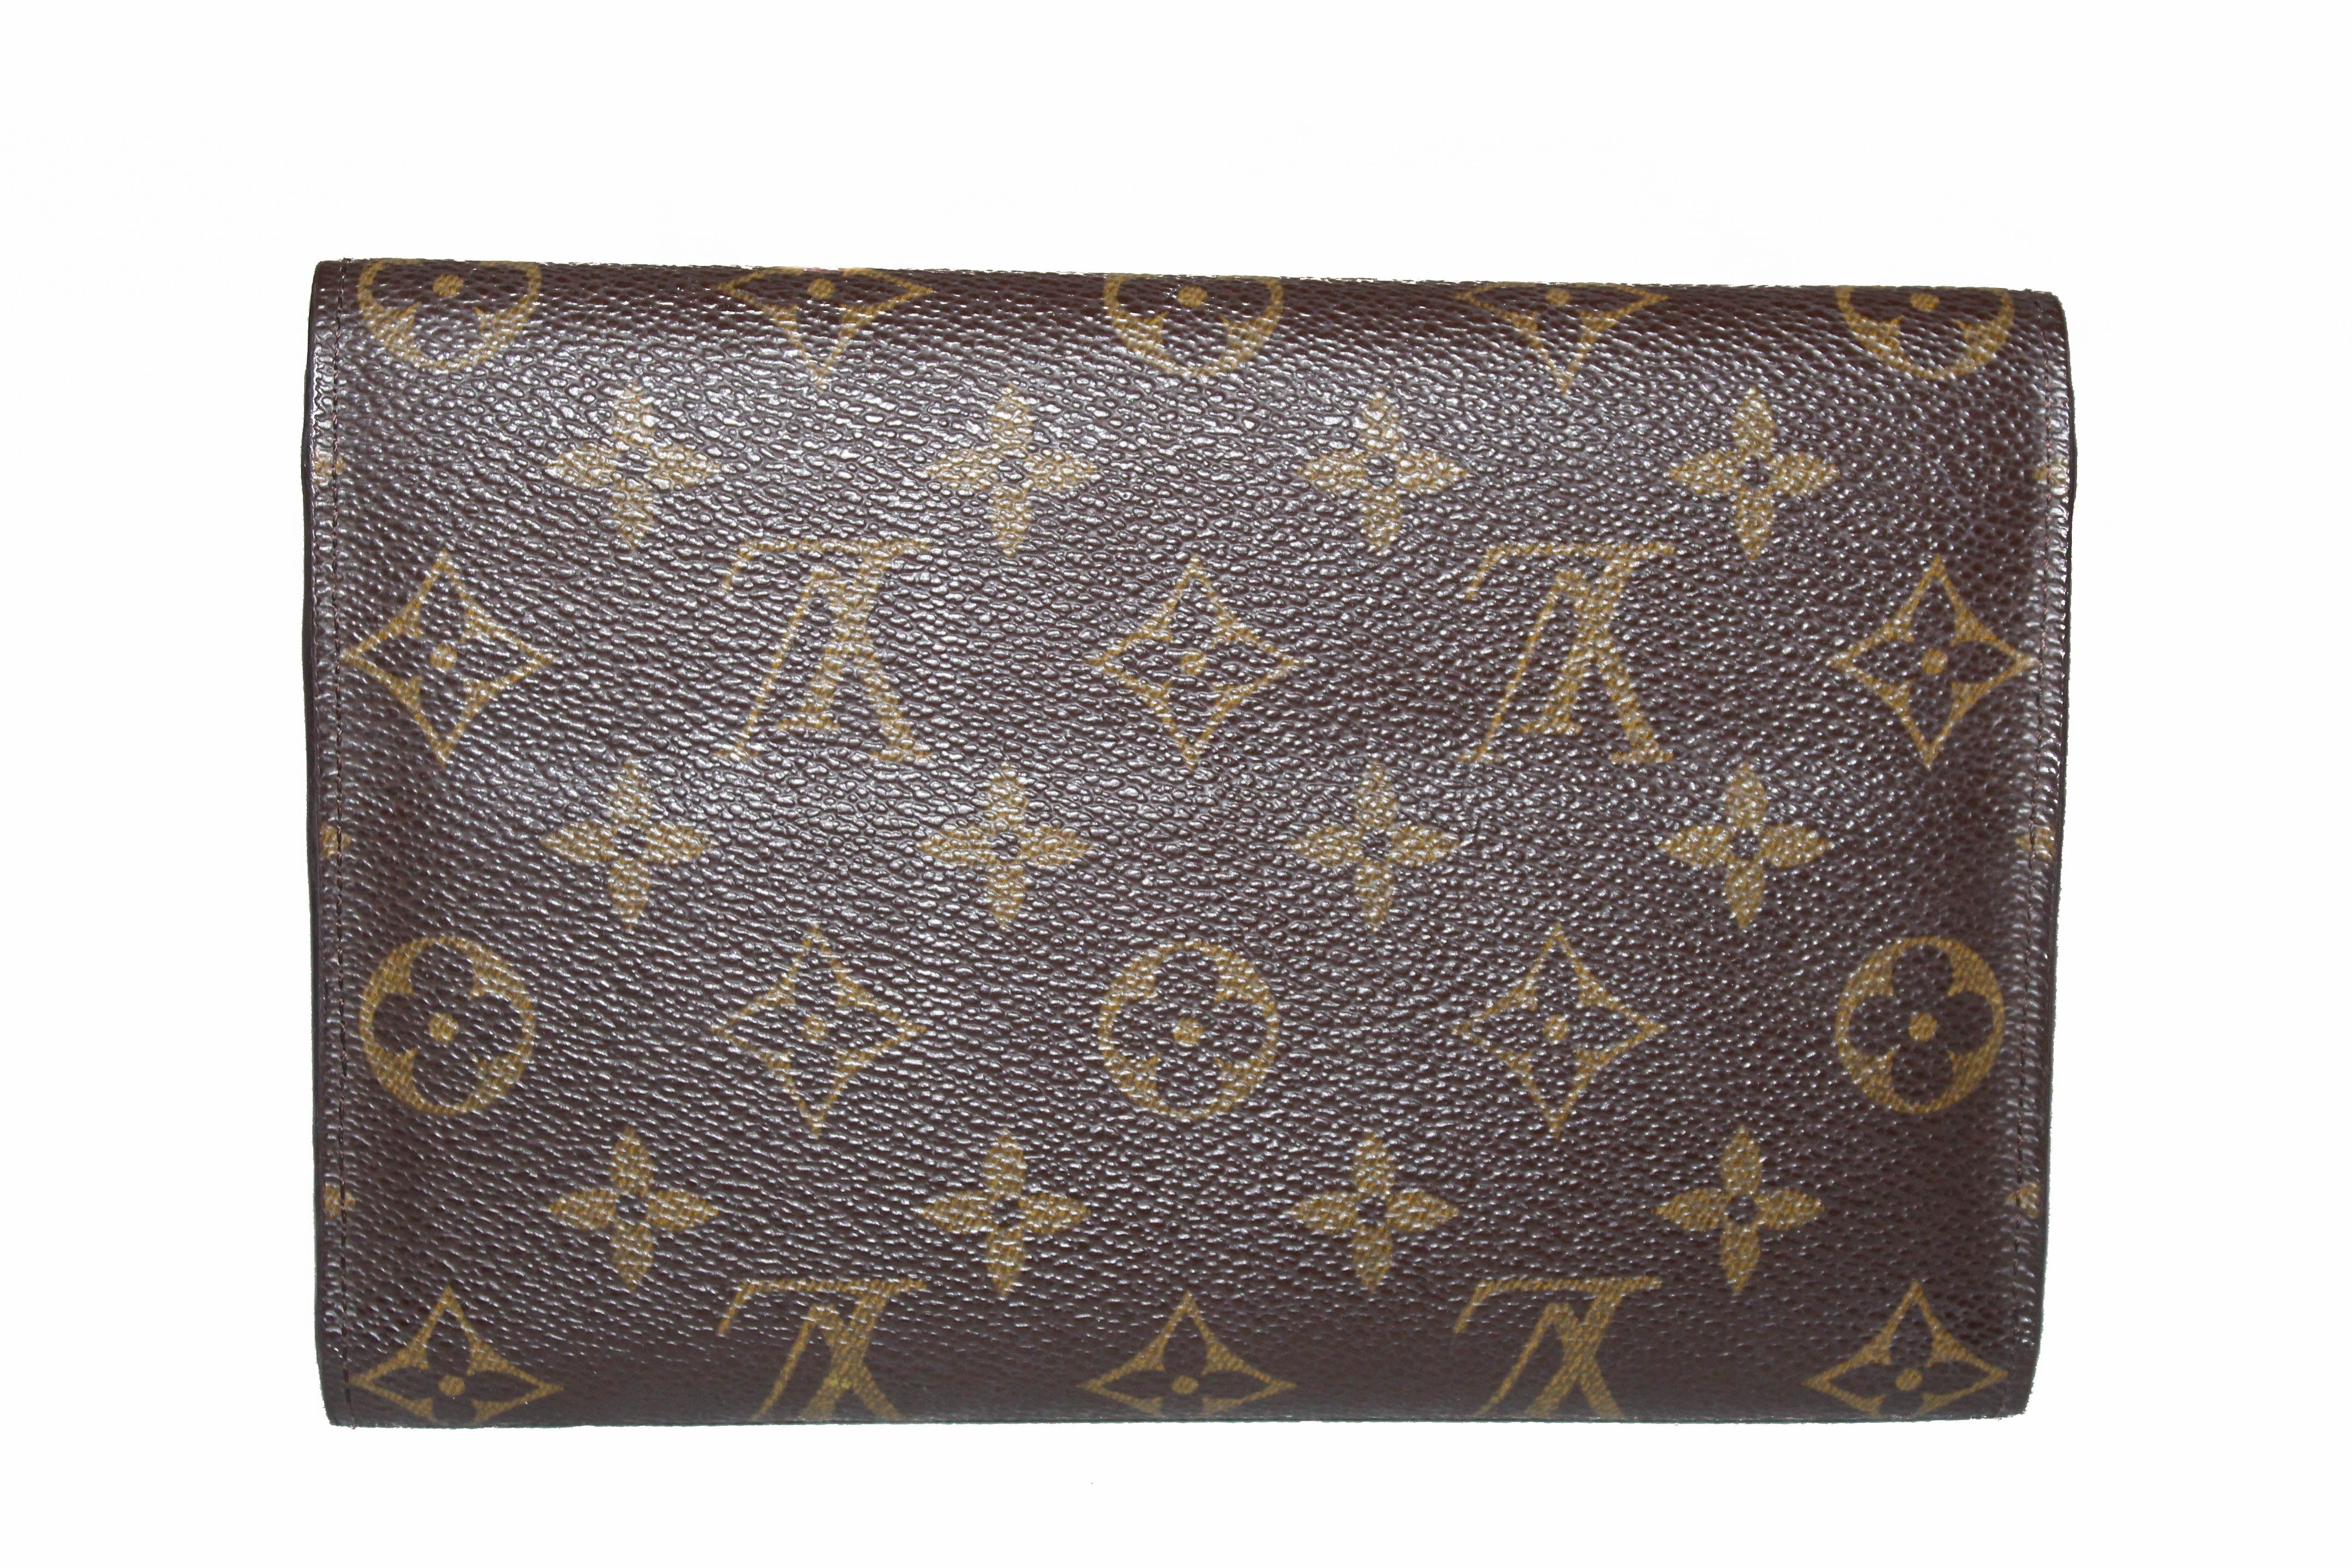 Authentic Louis Vuitton Classic Monogram Tri-Fold Wallet